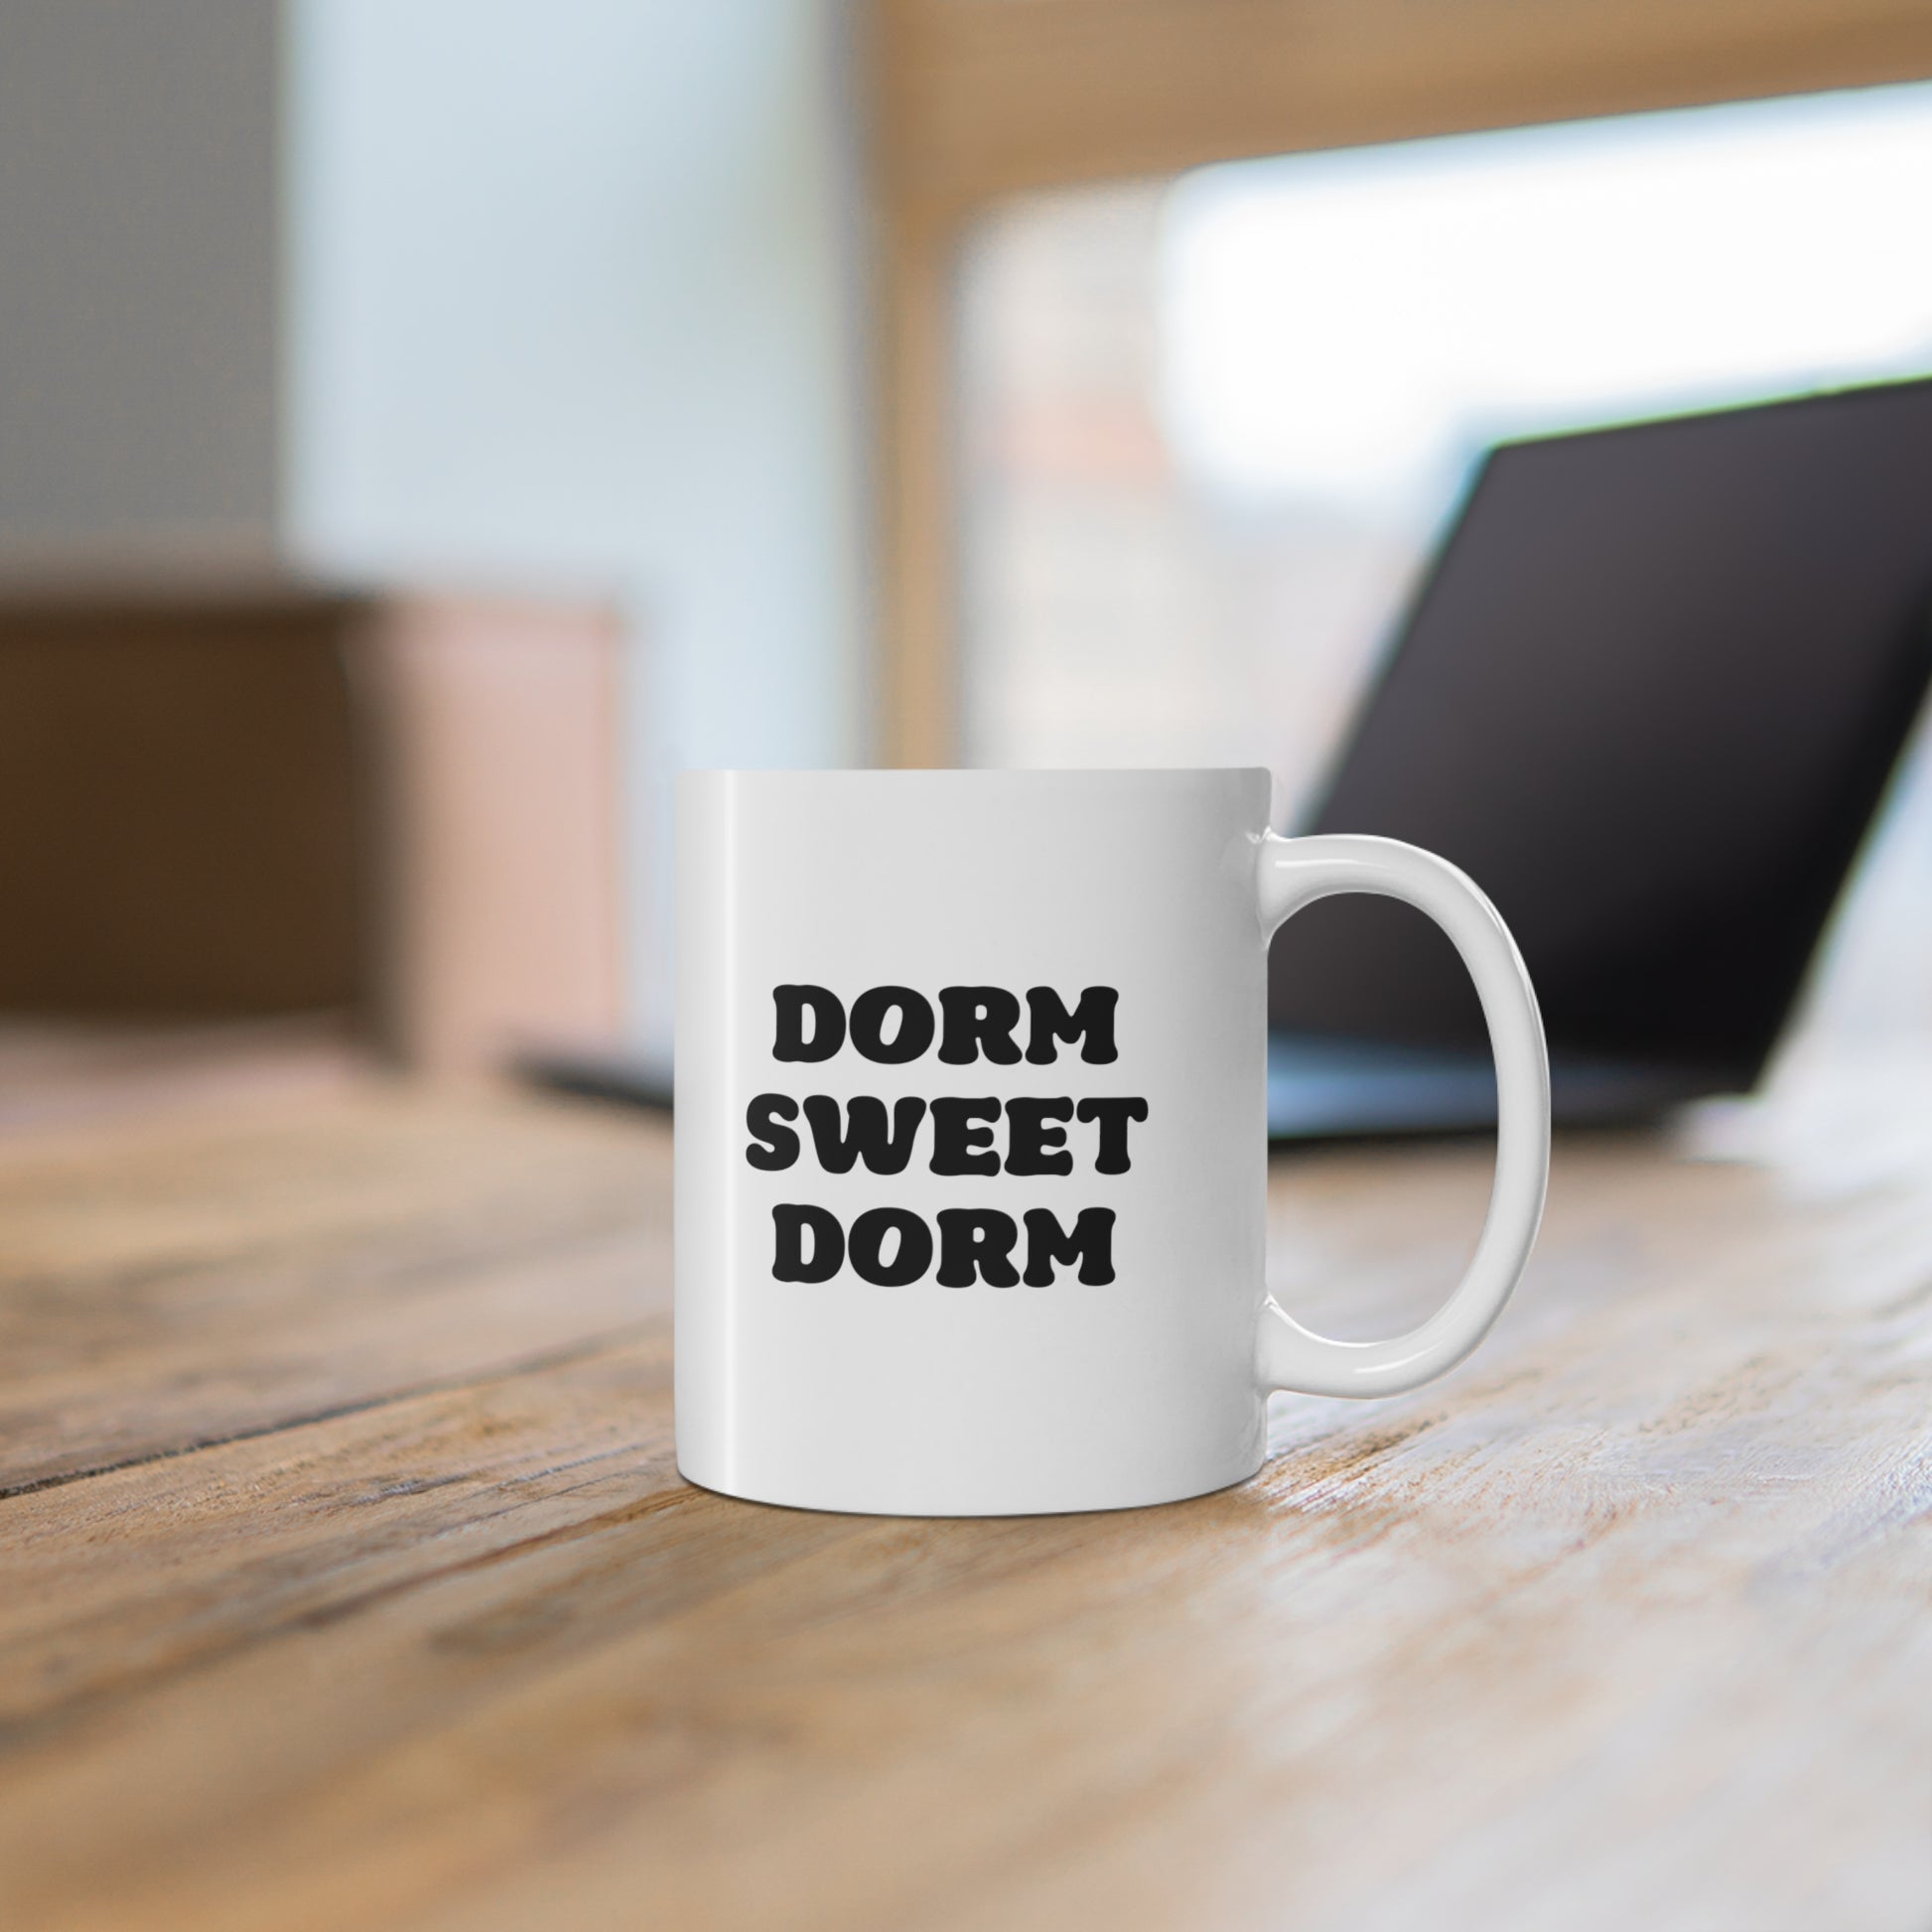 11oz ceramic mug with quote Dorm Sweet Dorm